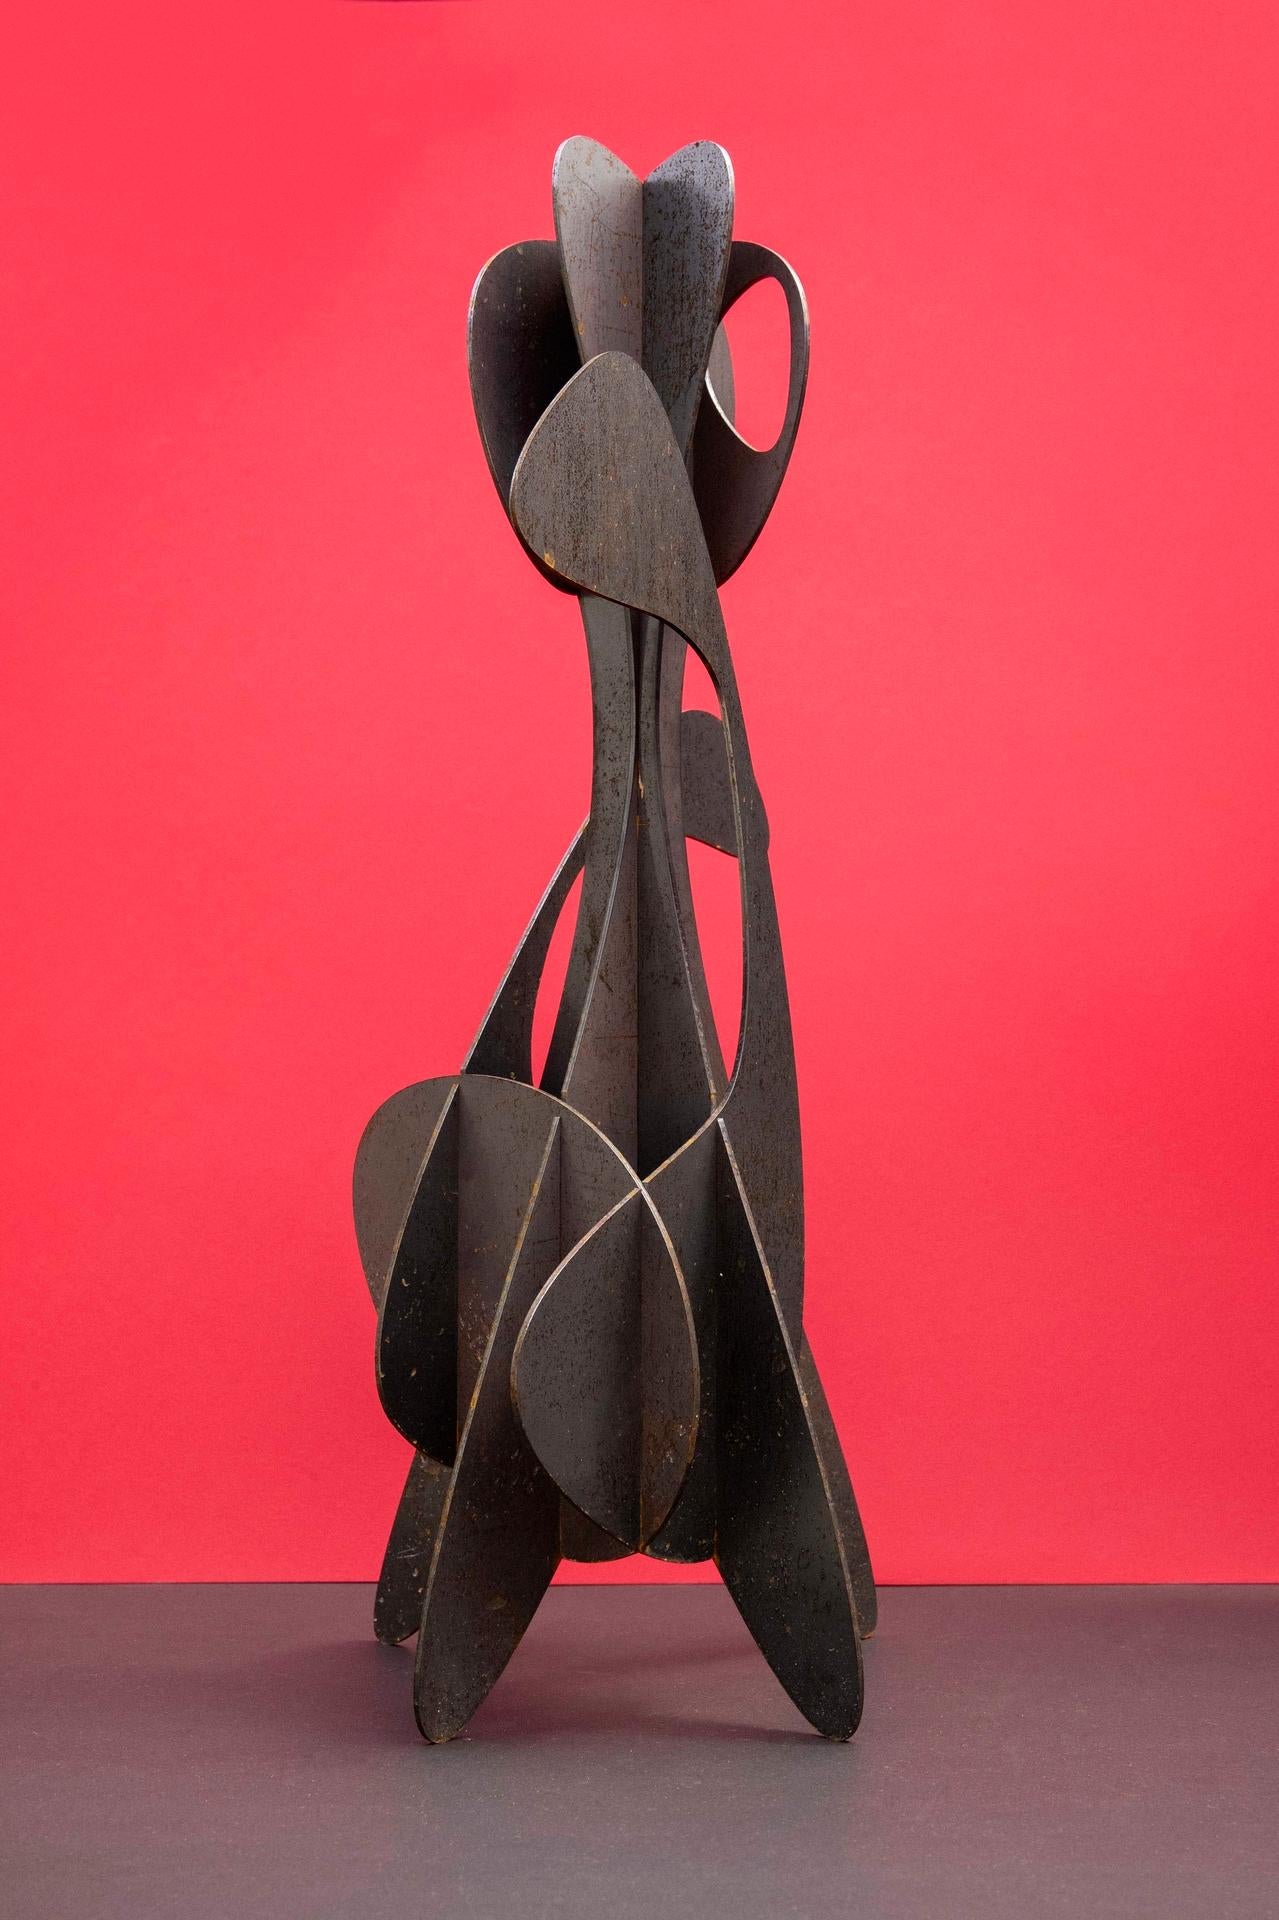 Alfil #2 est une sculpture en acier altéré de l'artiste contemporain Alejandro Vega Steele, dont les dimensions sont de 60 × 25 × 22 cm (23,6 × 9,8 × 8,7 in). 
La sculpture est signée et numérotée, elle fait partie d'une édition limitée à 5